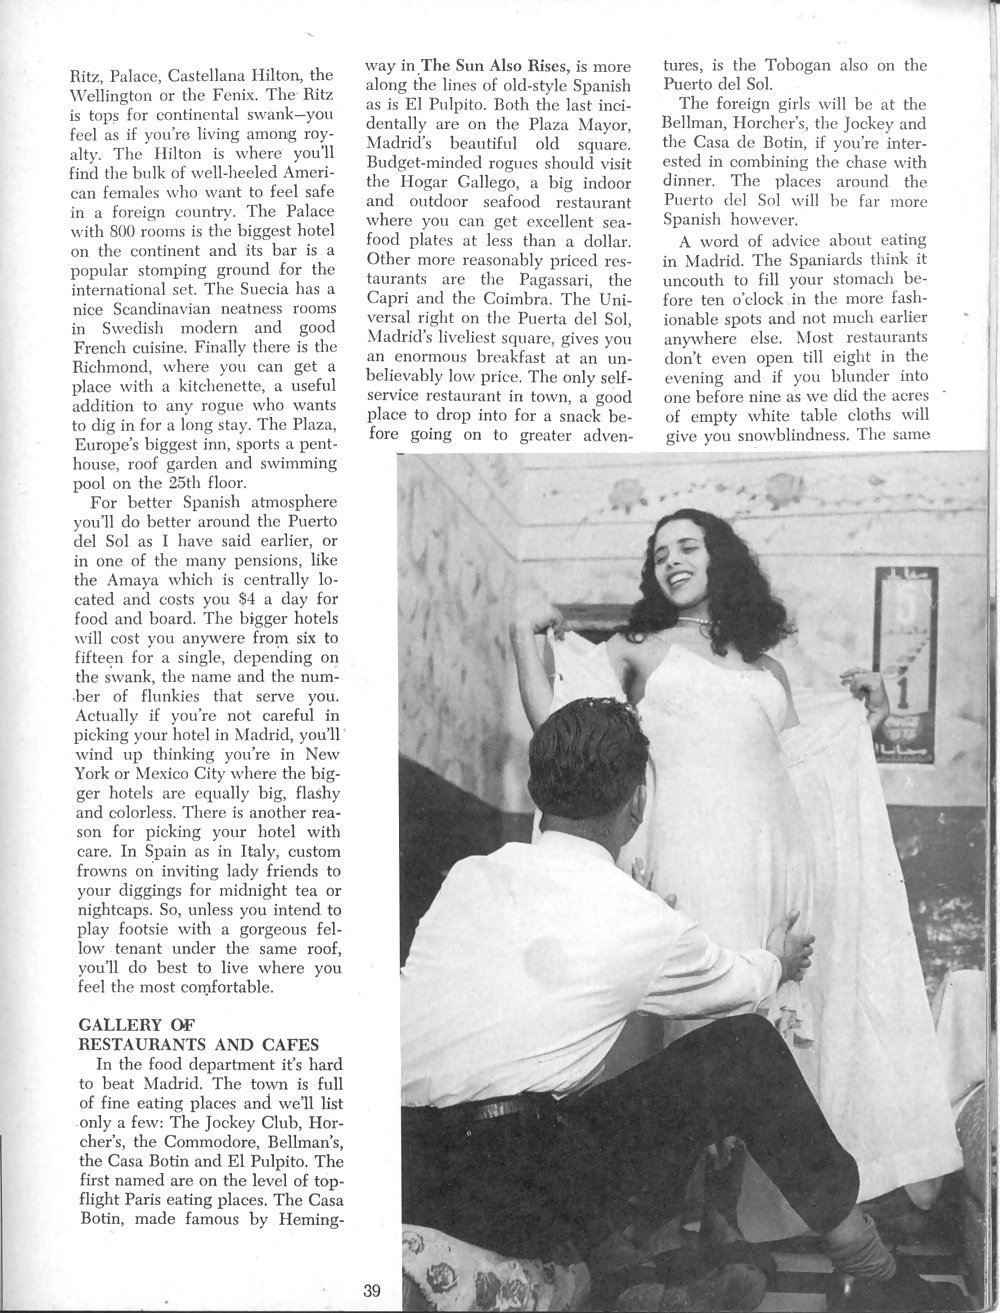 Vintage revistas samlet wench no 01 - 1962
 #1742031